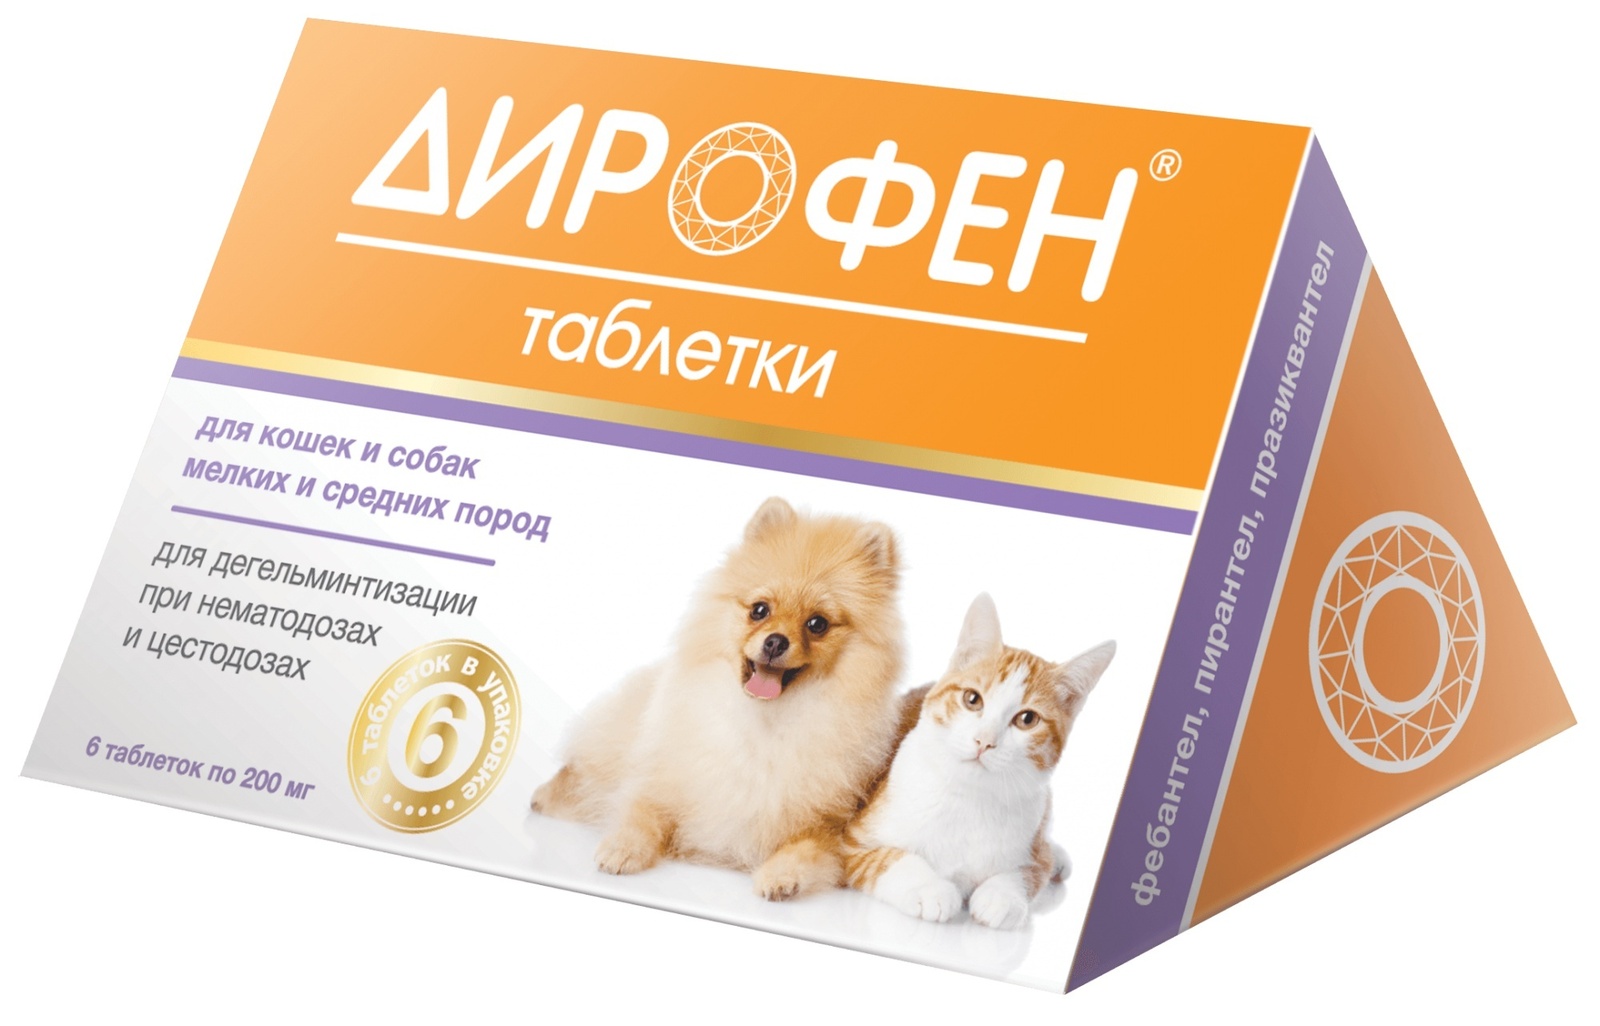 Apicenna дирофен плюс таблетки от глистов для кошек и собак (11 г)